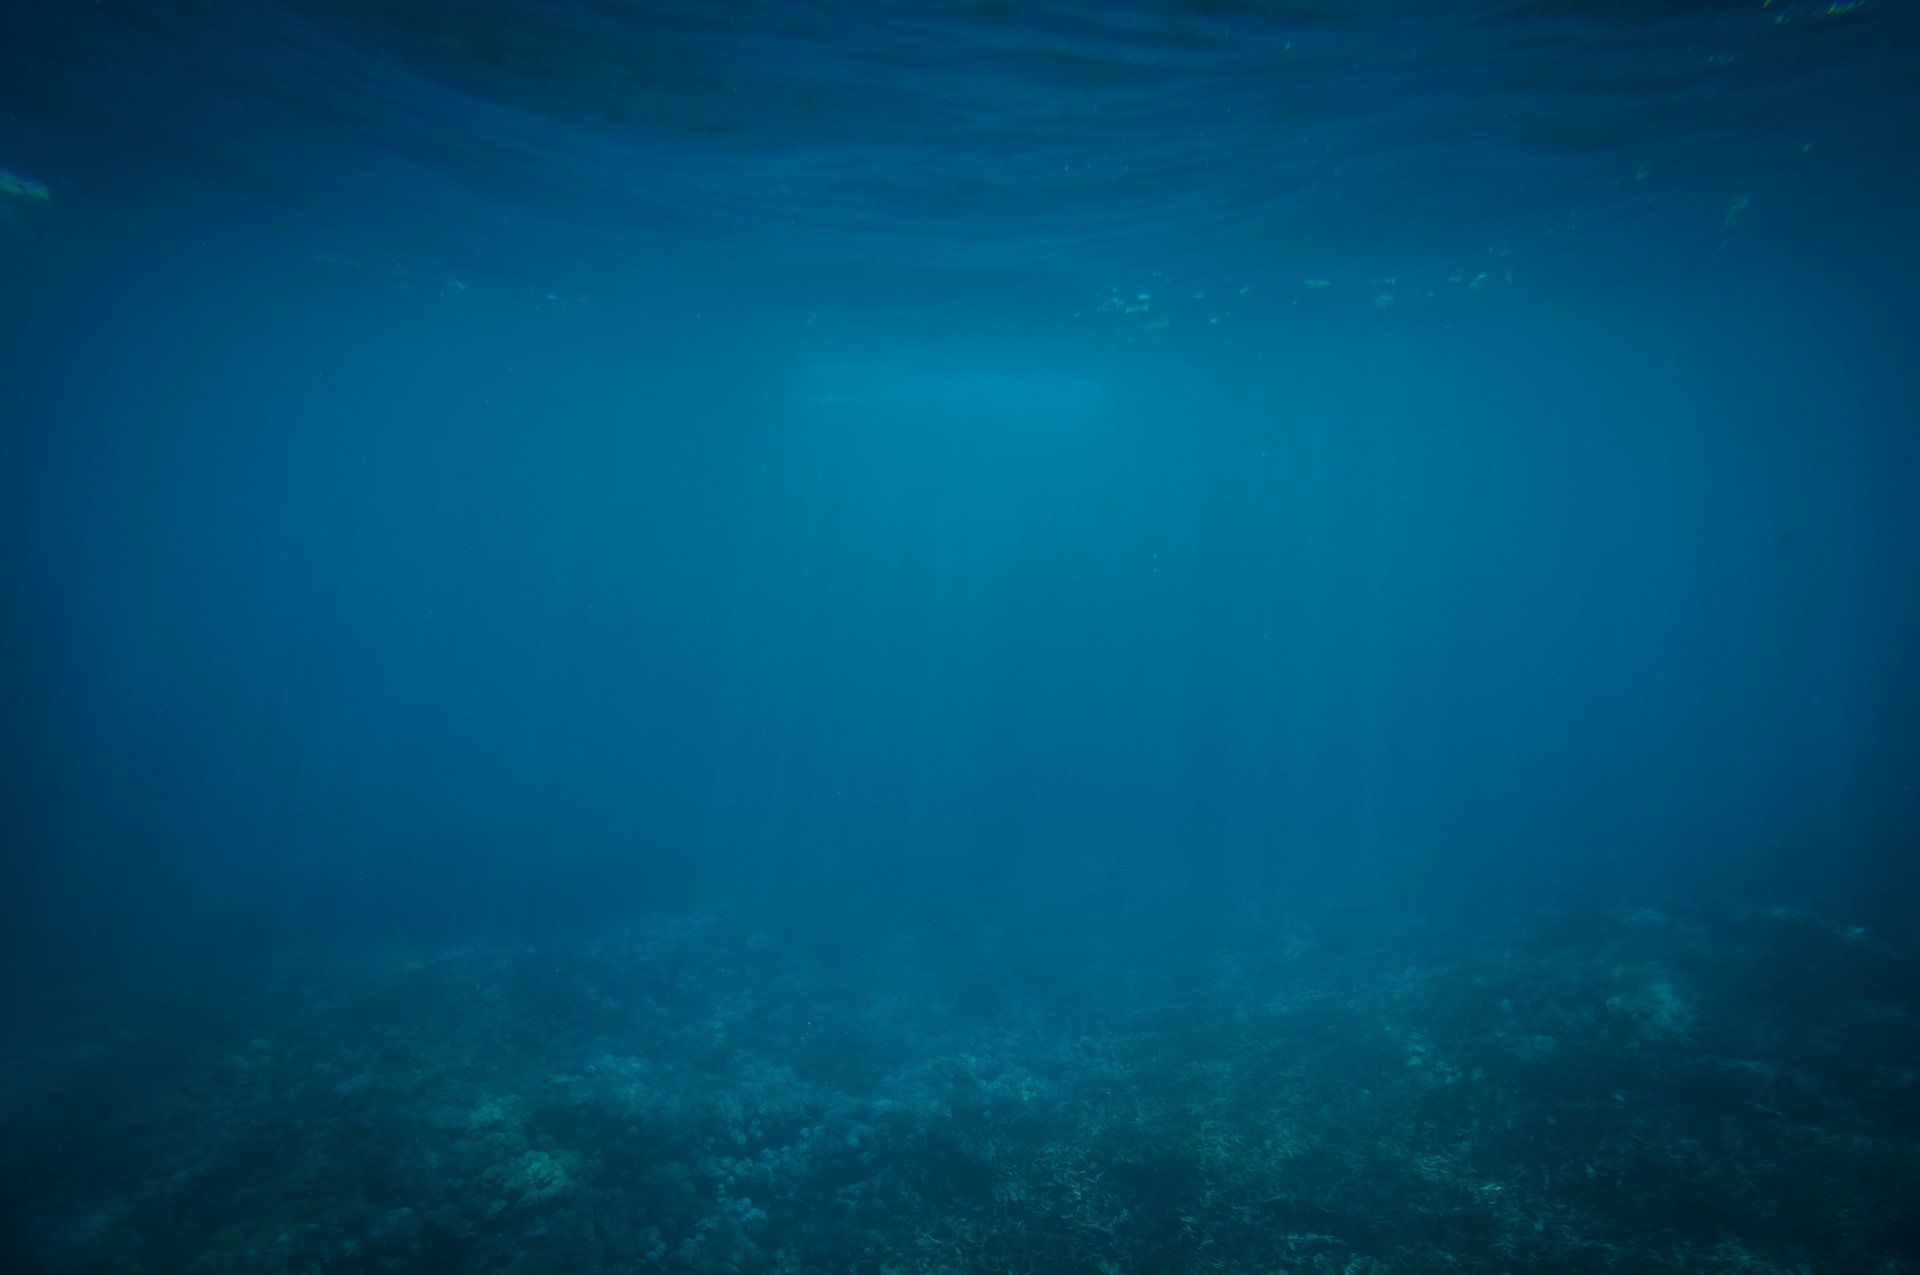 Unterwasseraufnahme in Blautönen. Man erkennt schemenhaft den Meeresboden und die Wasseroberfläche.